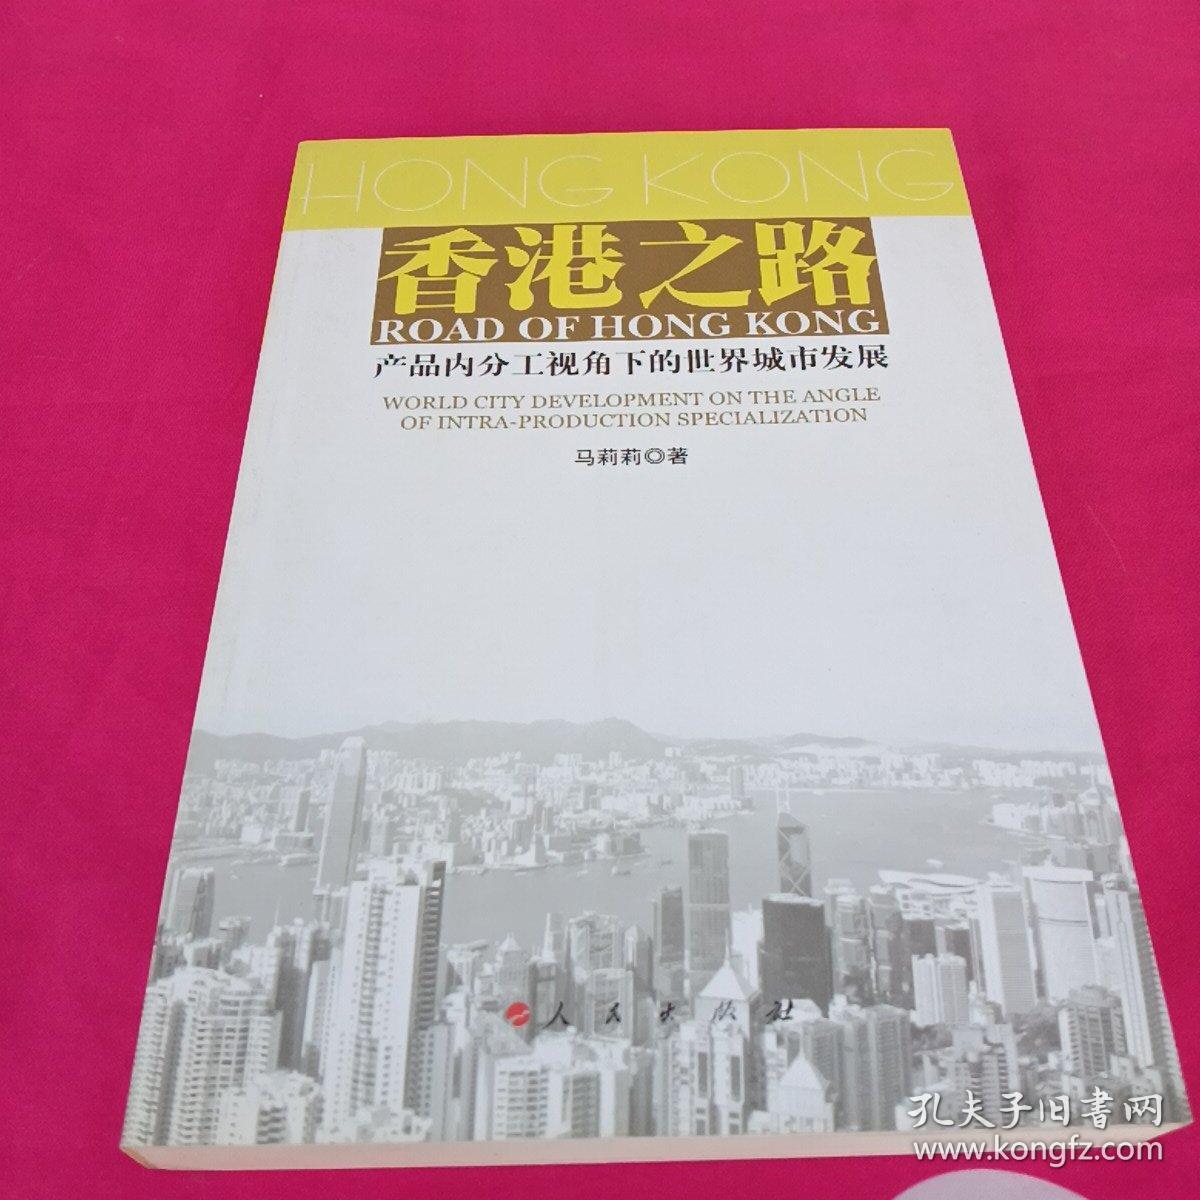 香港之路：产品内分工视角下的世界城市发展